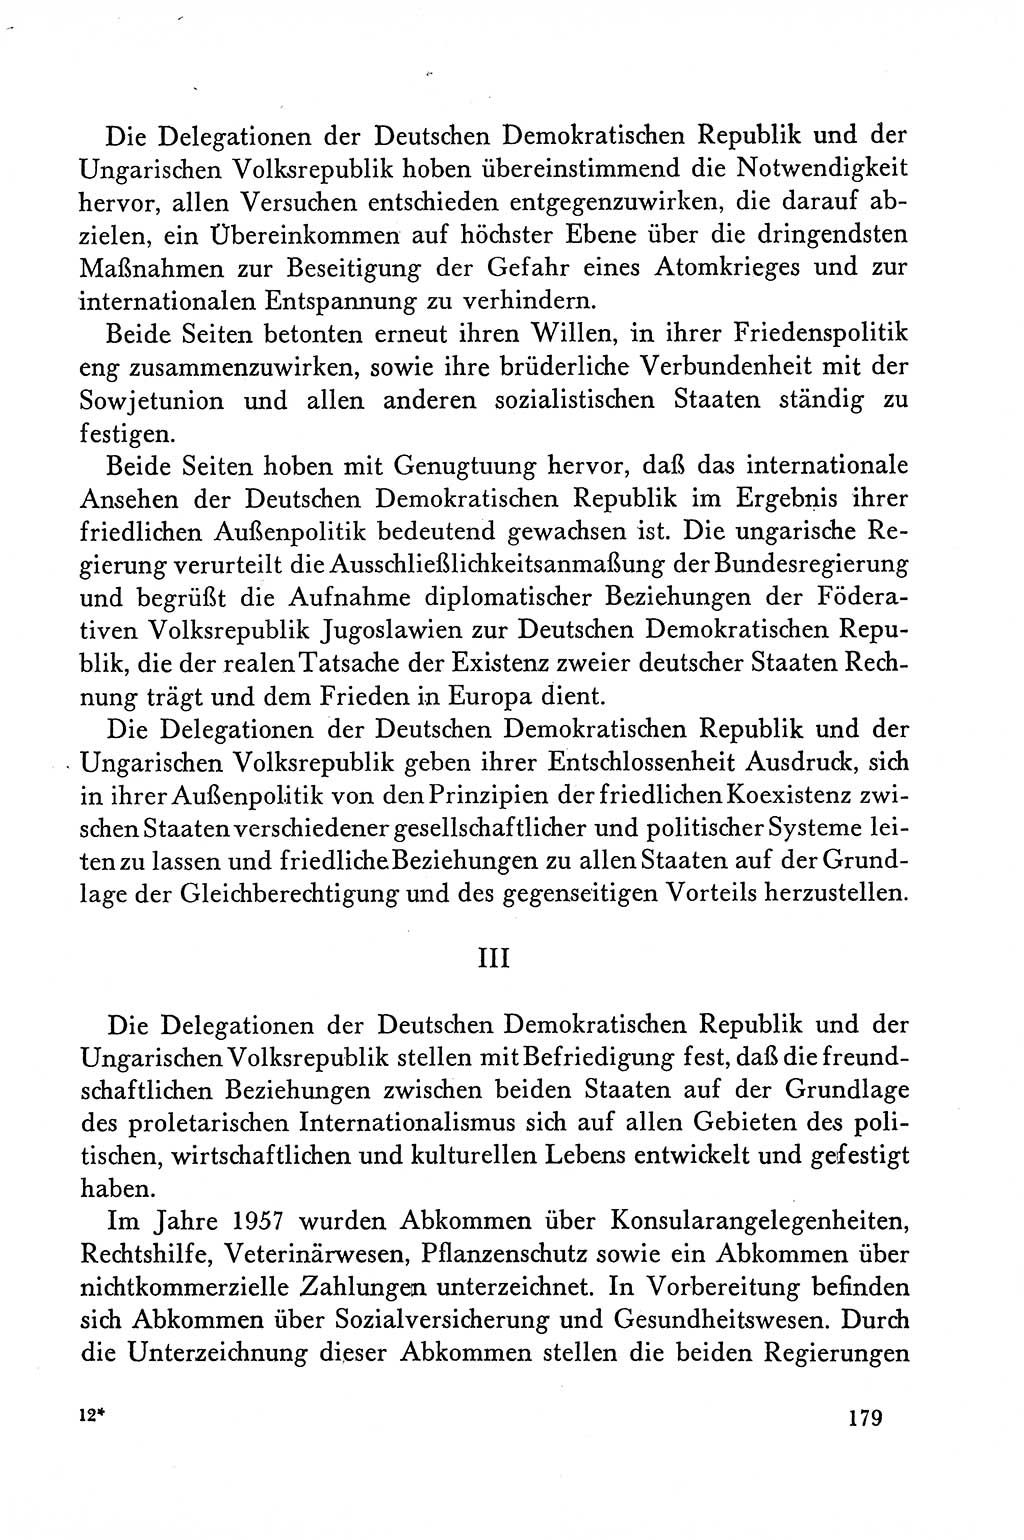 Dokumente der Sozialistischen Einheitspartei Deutschlands (SED) [Deutsche Demokratische Republik (DDR)] 1958-1959, Seite 179 (Dok. SED DDR 1958-1959, S. 179)